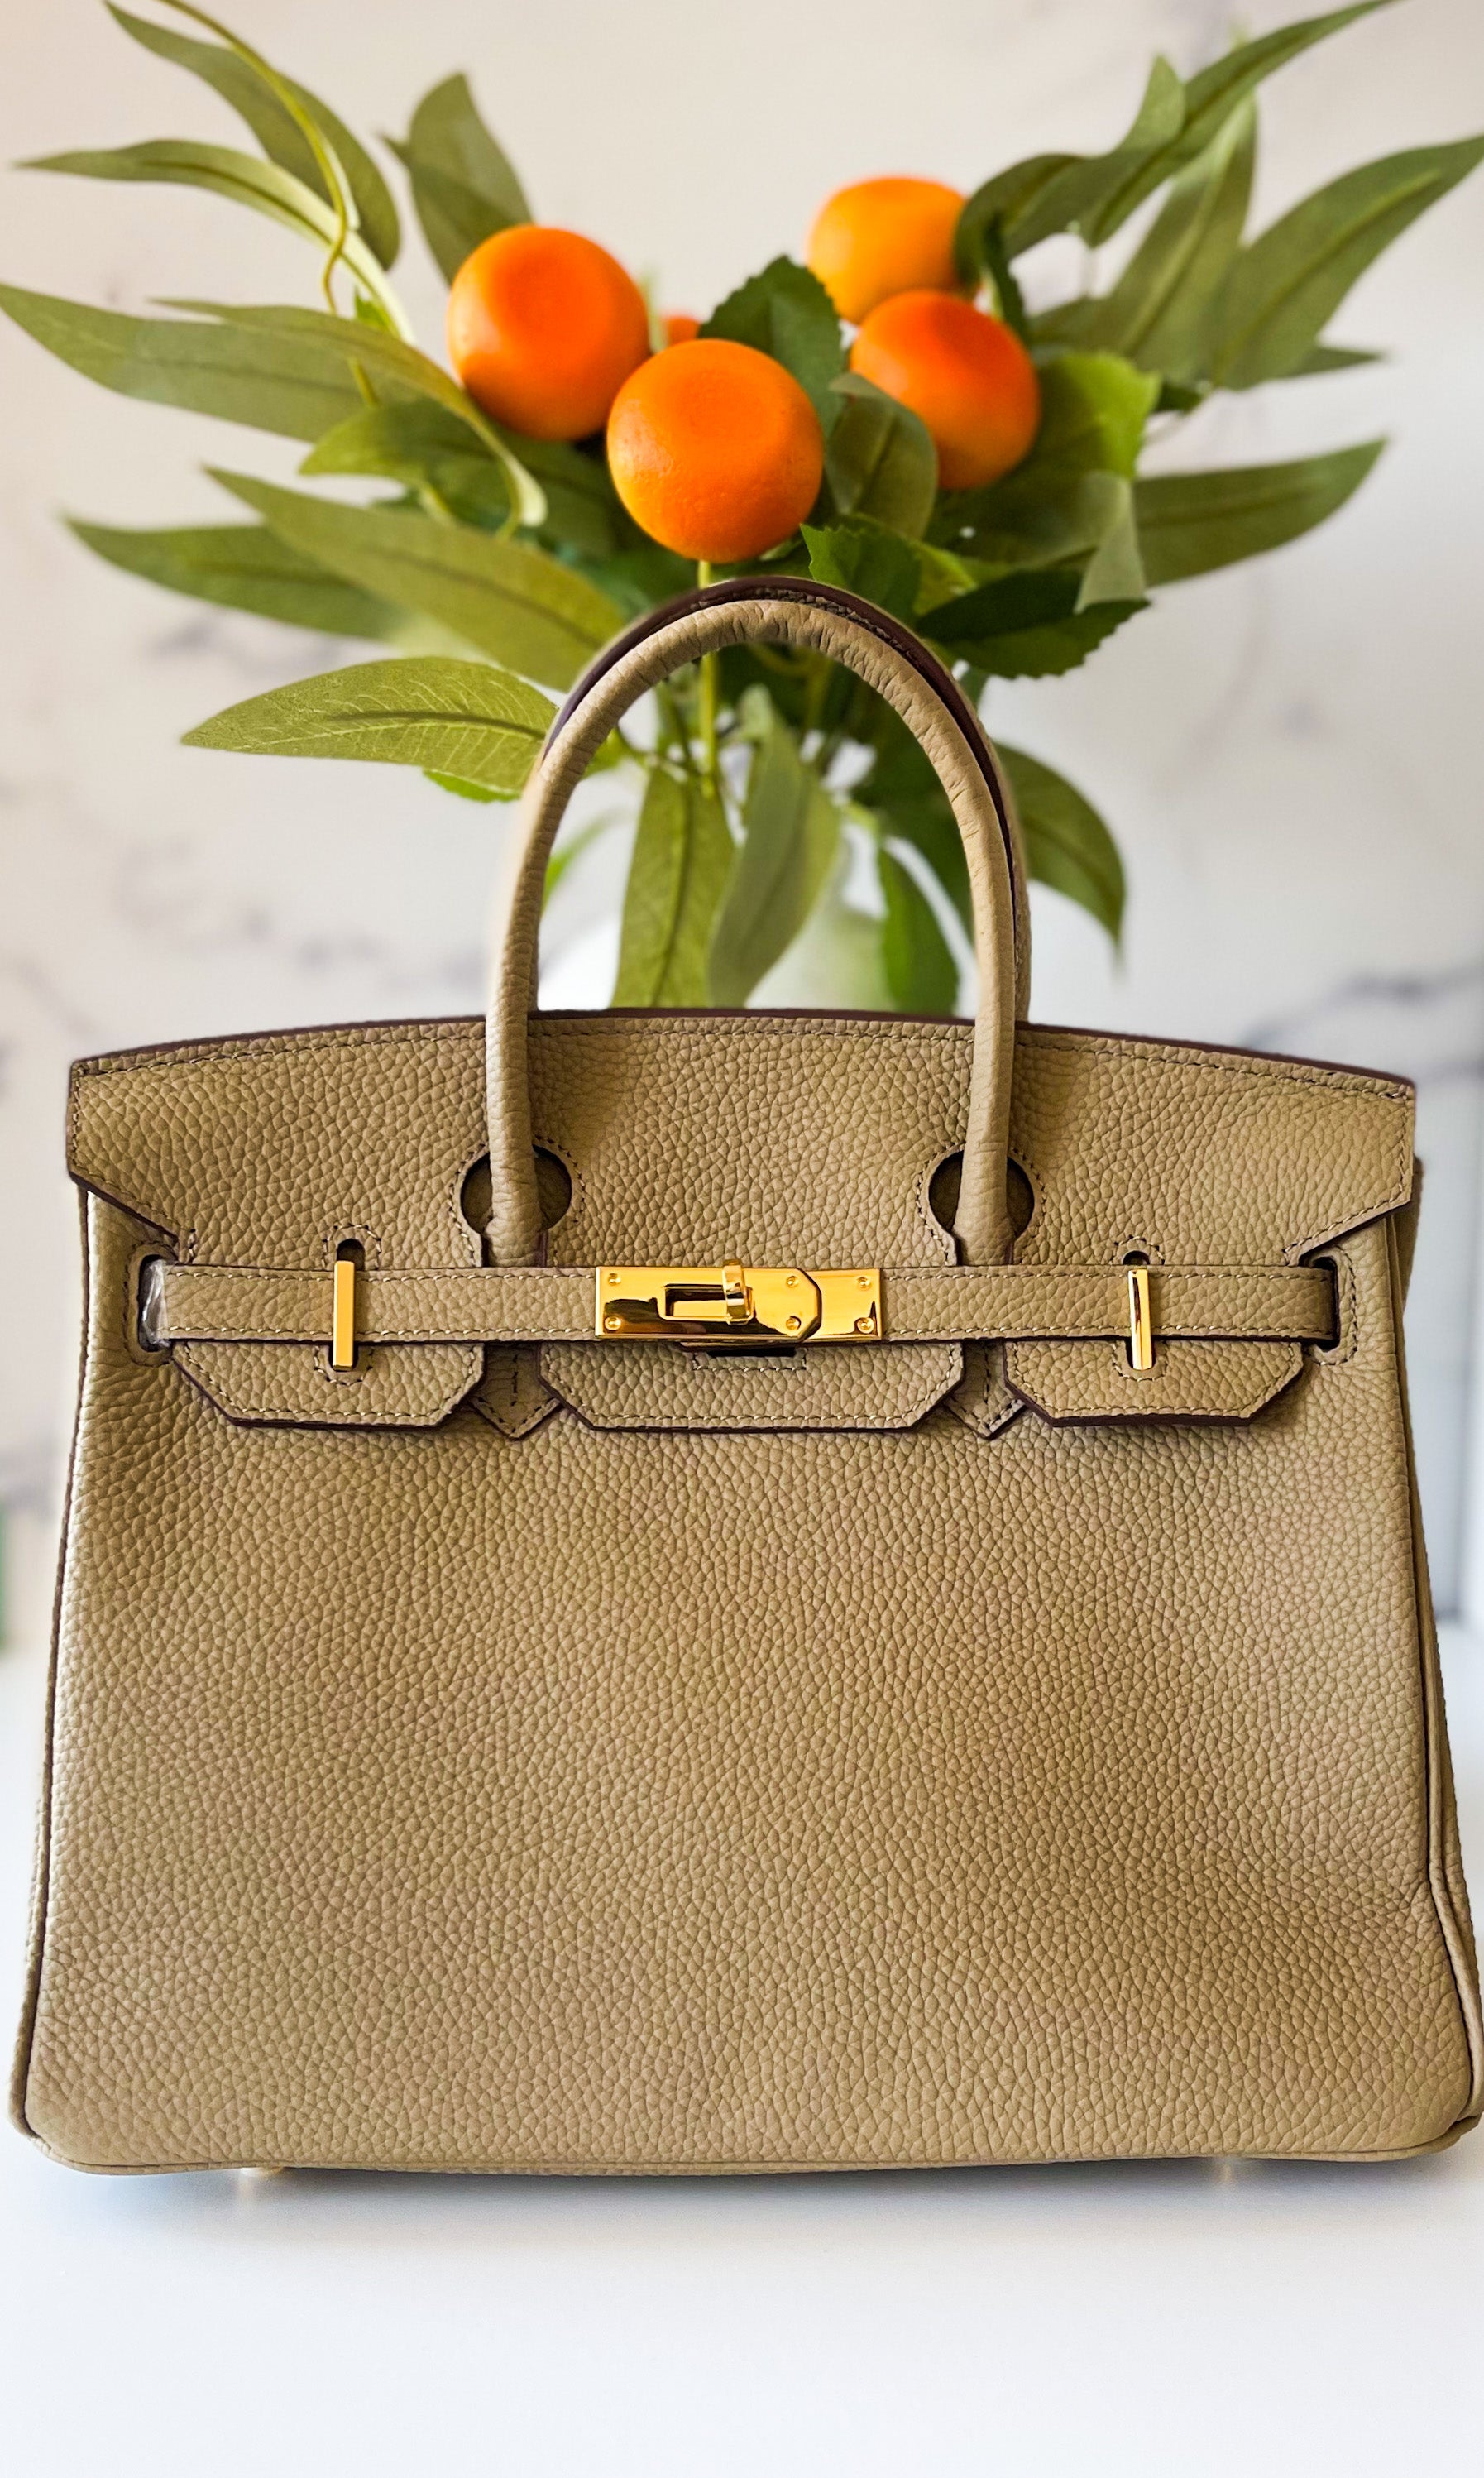 Hermes Birkin bag 30 Bronze dore Togo leather Gold hardware for